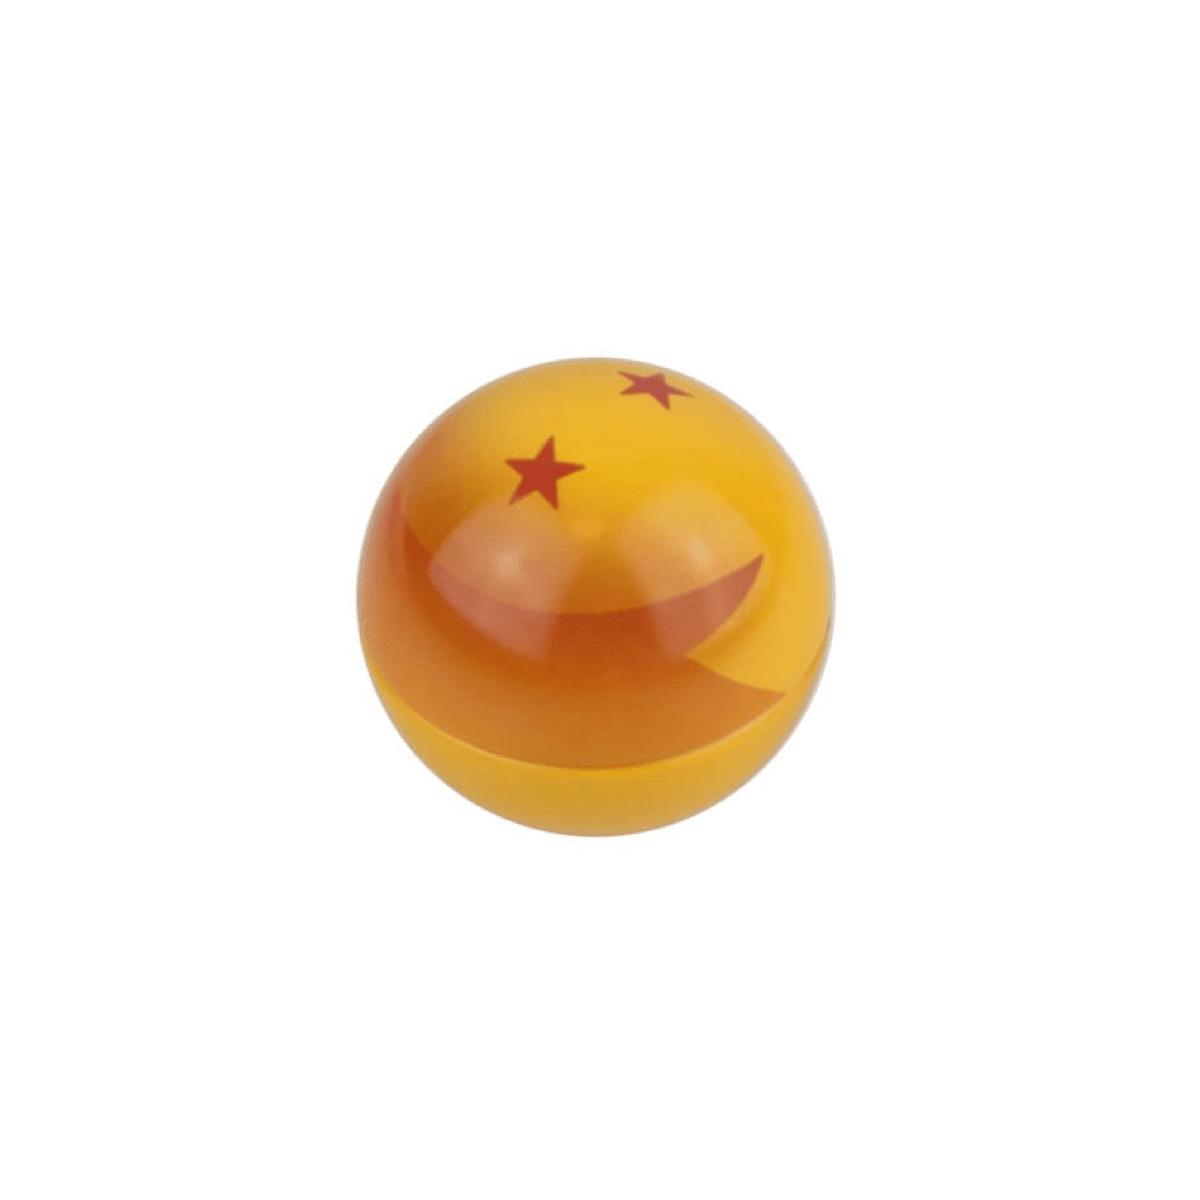 Bonbon Dragon Ball Z boule de cristal